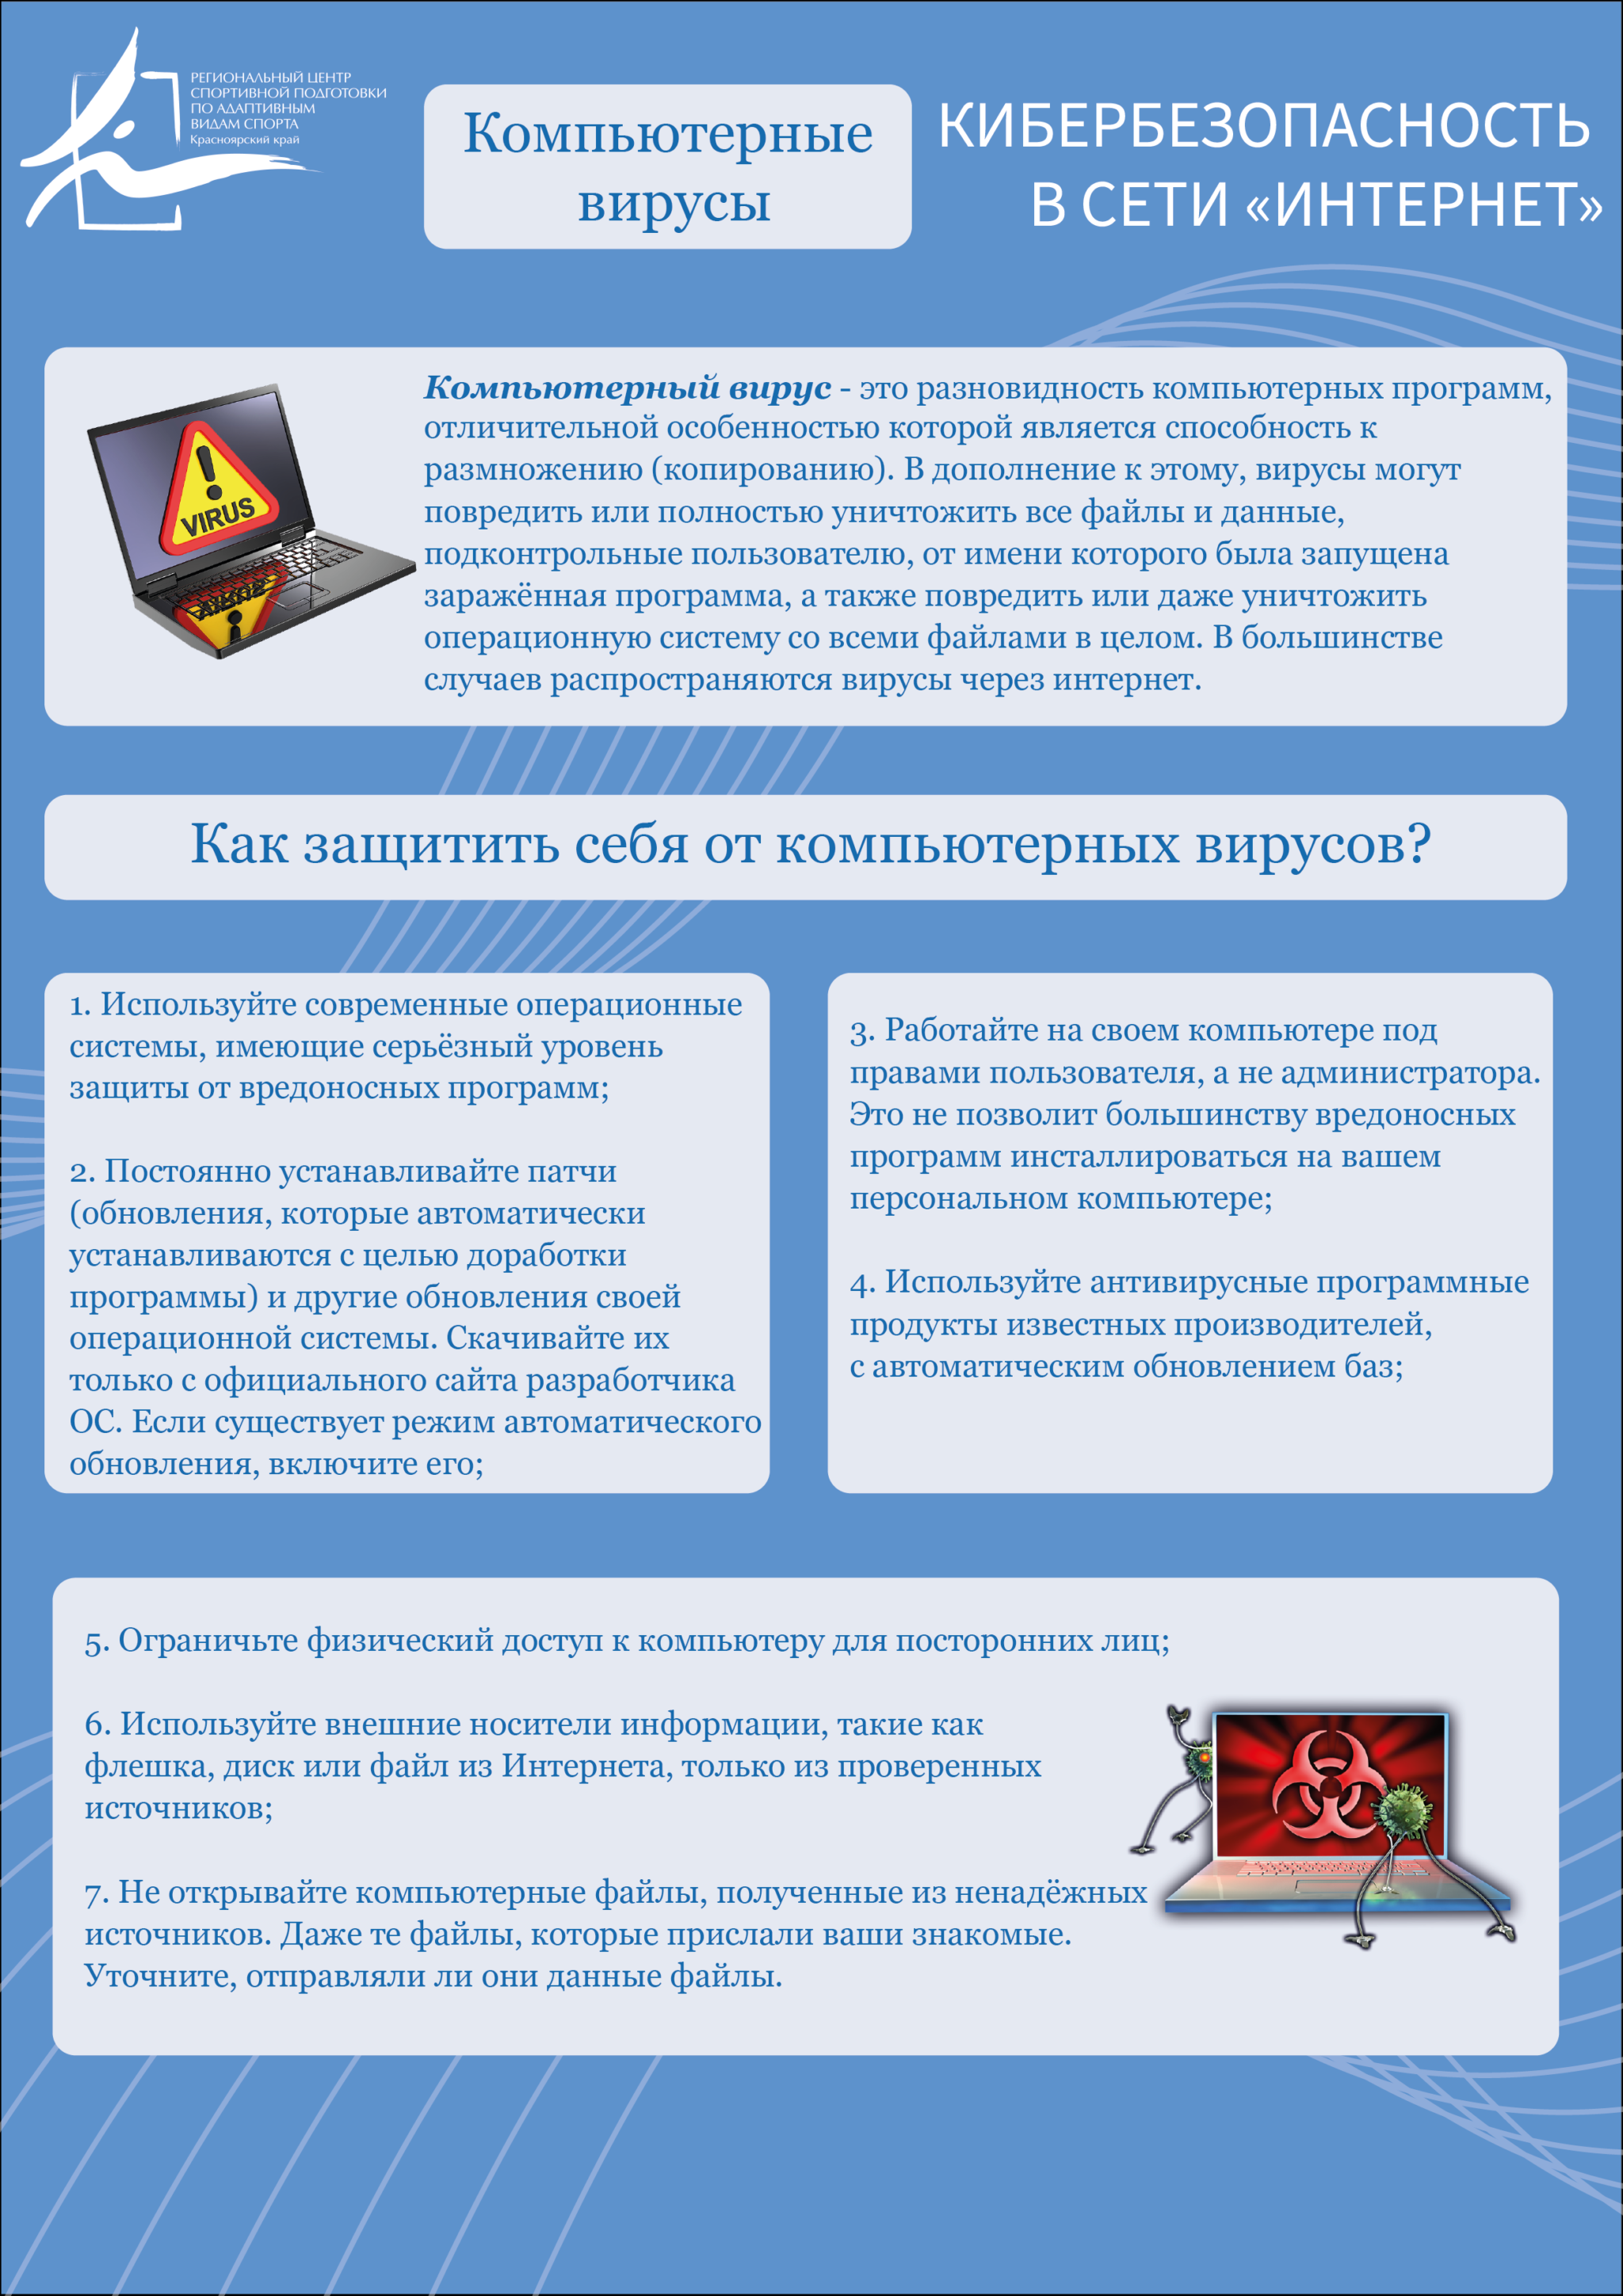 pamjatki-kiberprestupnost_montazhnaja-oblast-1